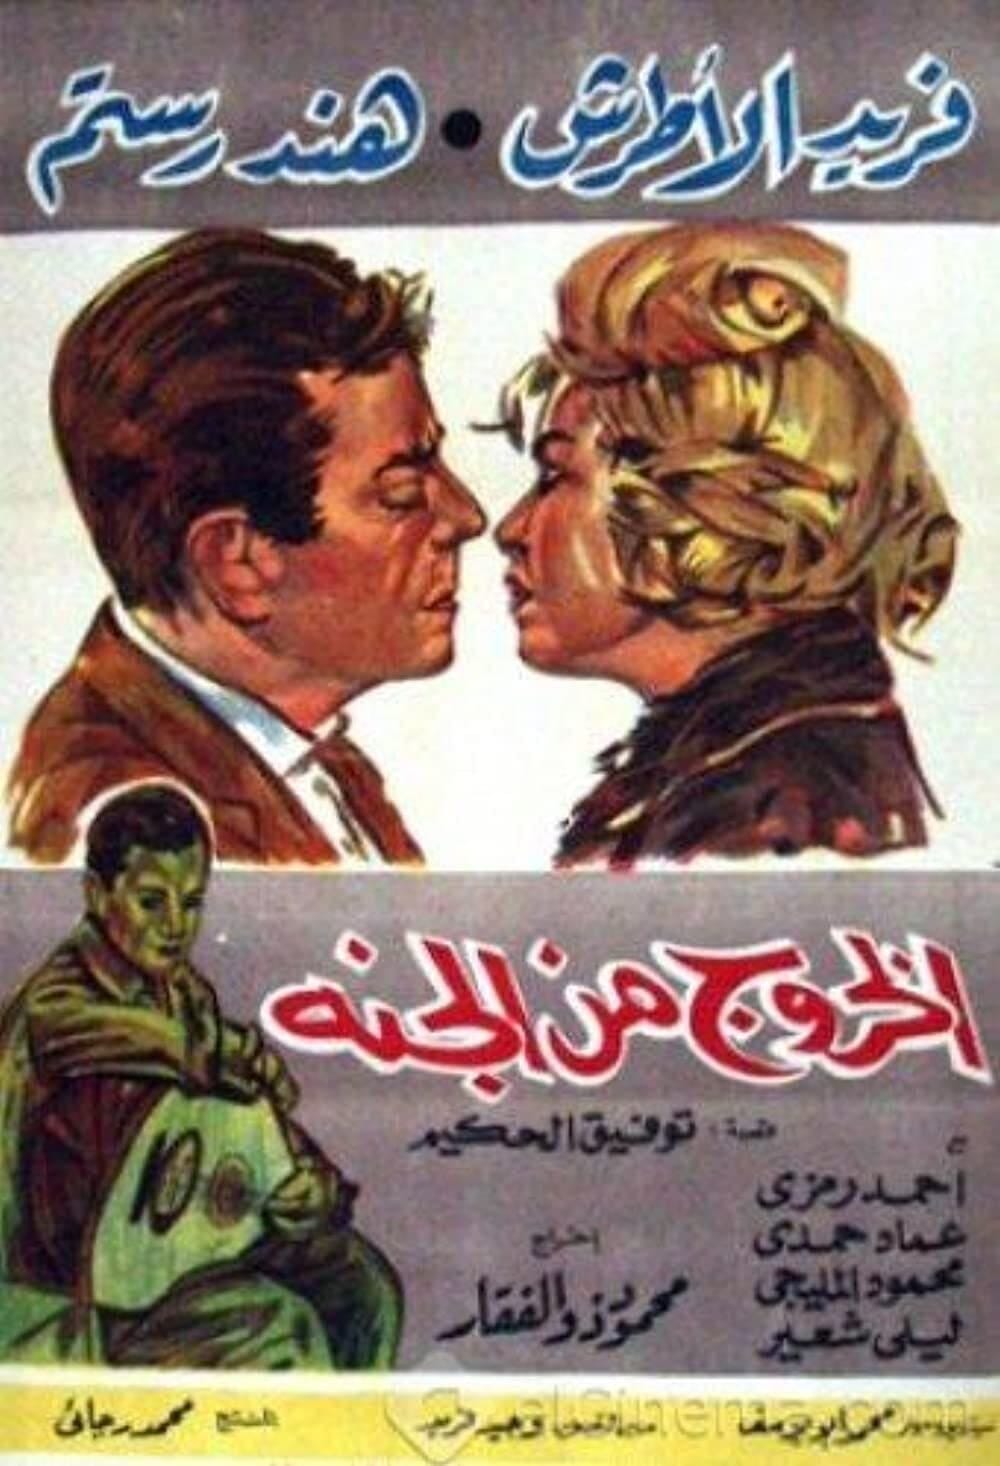 El khouroug min el guana (1967) | Poster